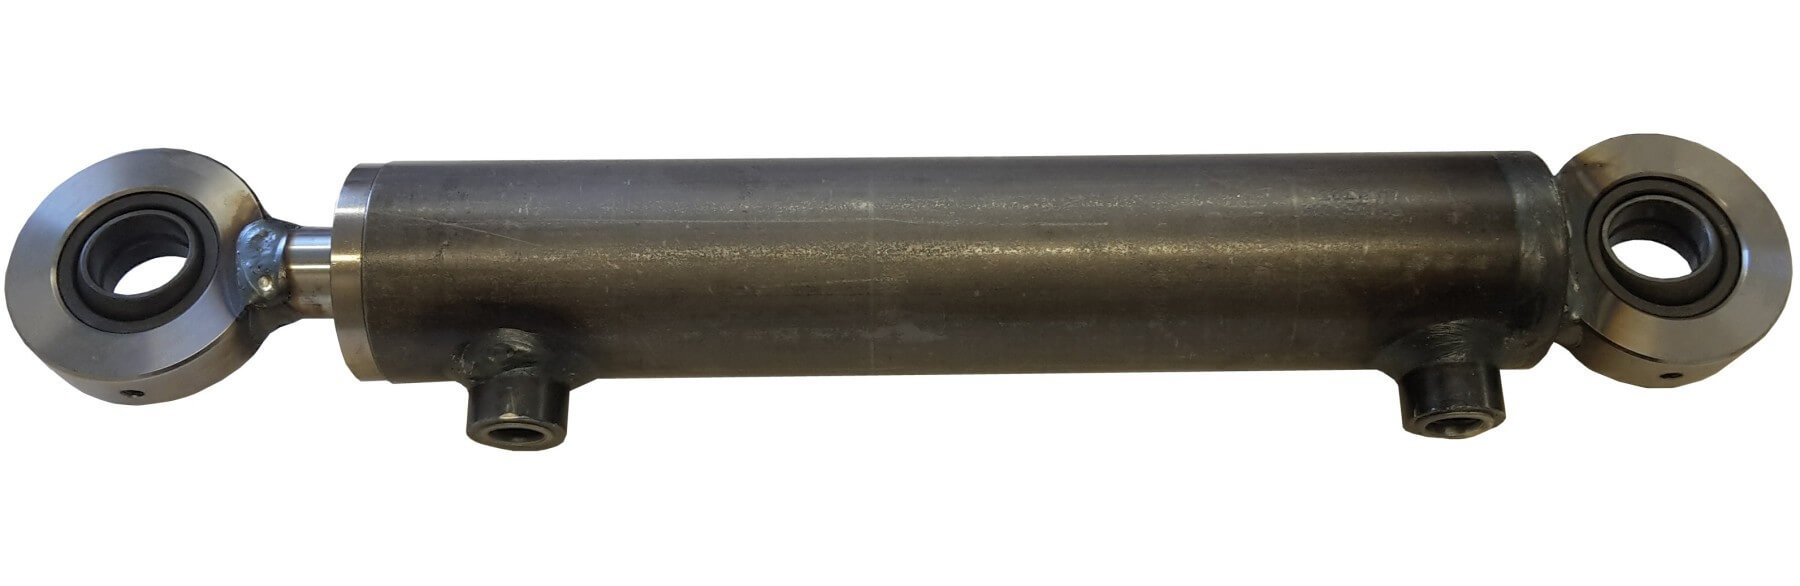 Hydraulisylinteri CL 70. 40. 450 GE - Kailatec Oy Verkkokauppa